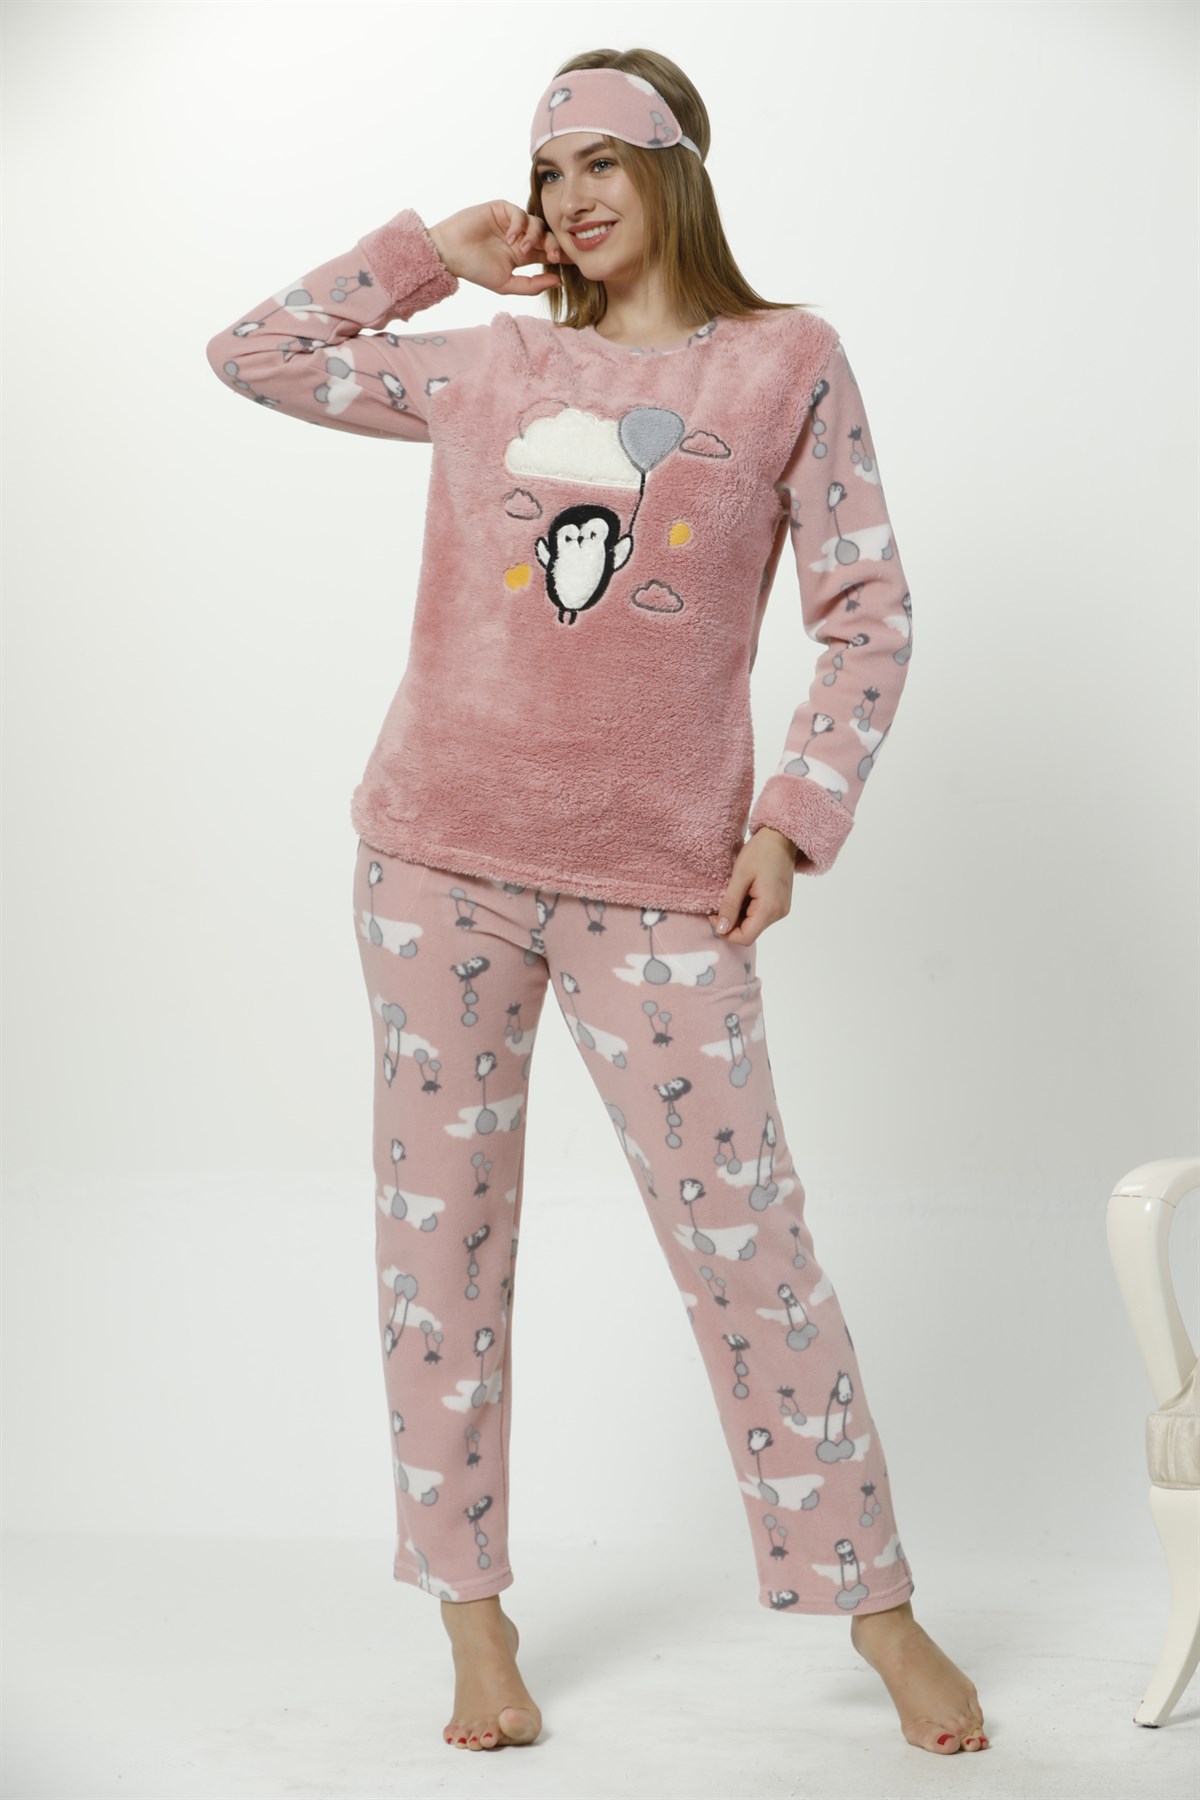 rasathane bileşen şeker  karar yıkama sık sık polar pijama takımı bayan fiyatları - kylemitchell.org